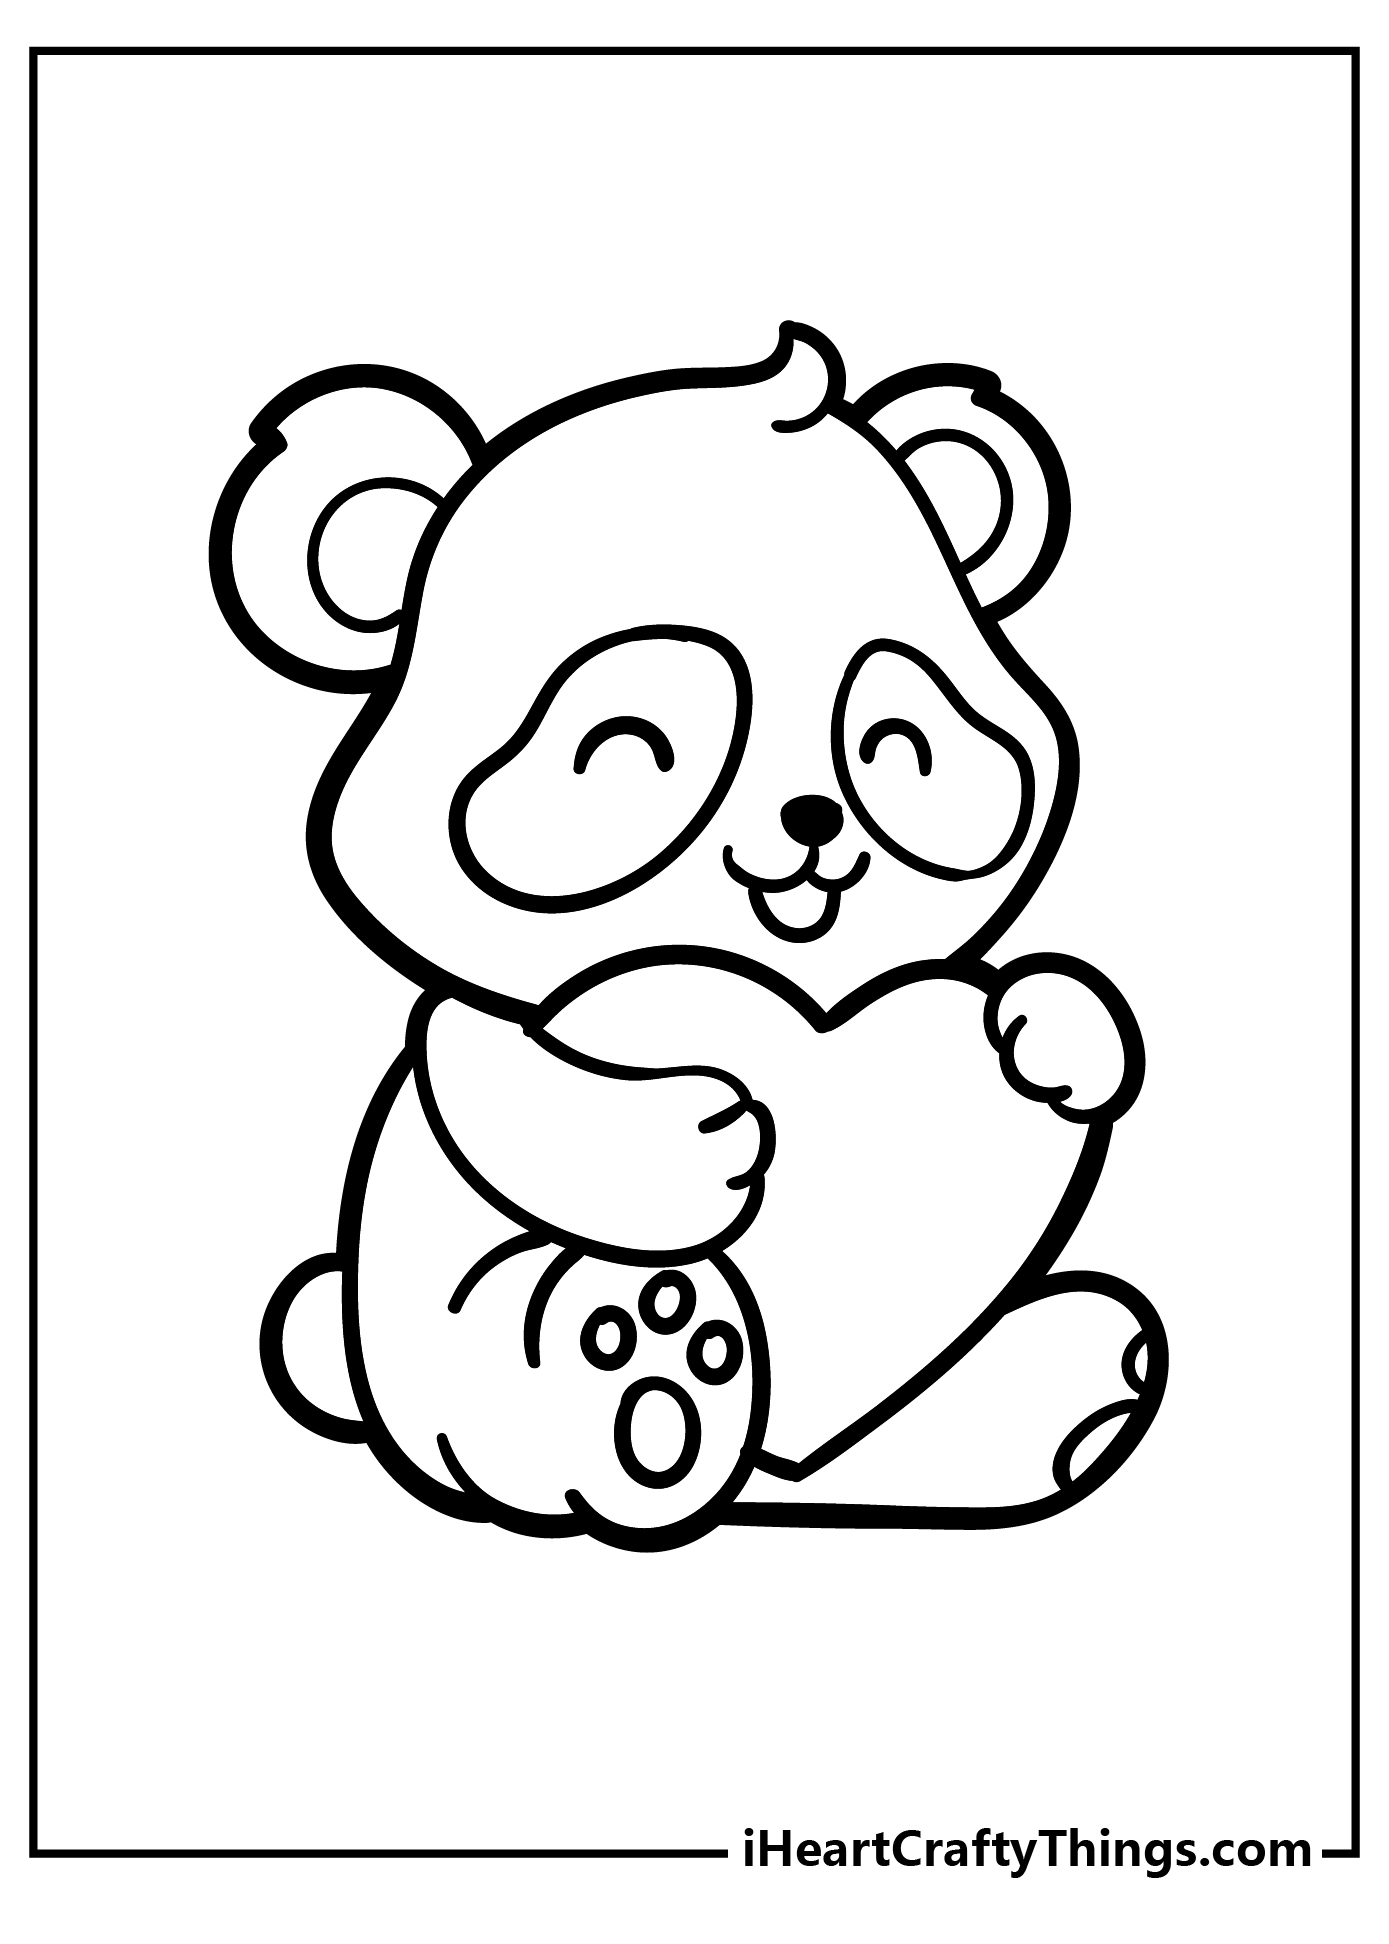 Panda Coloring Pages free pdf download